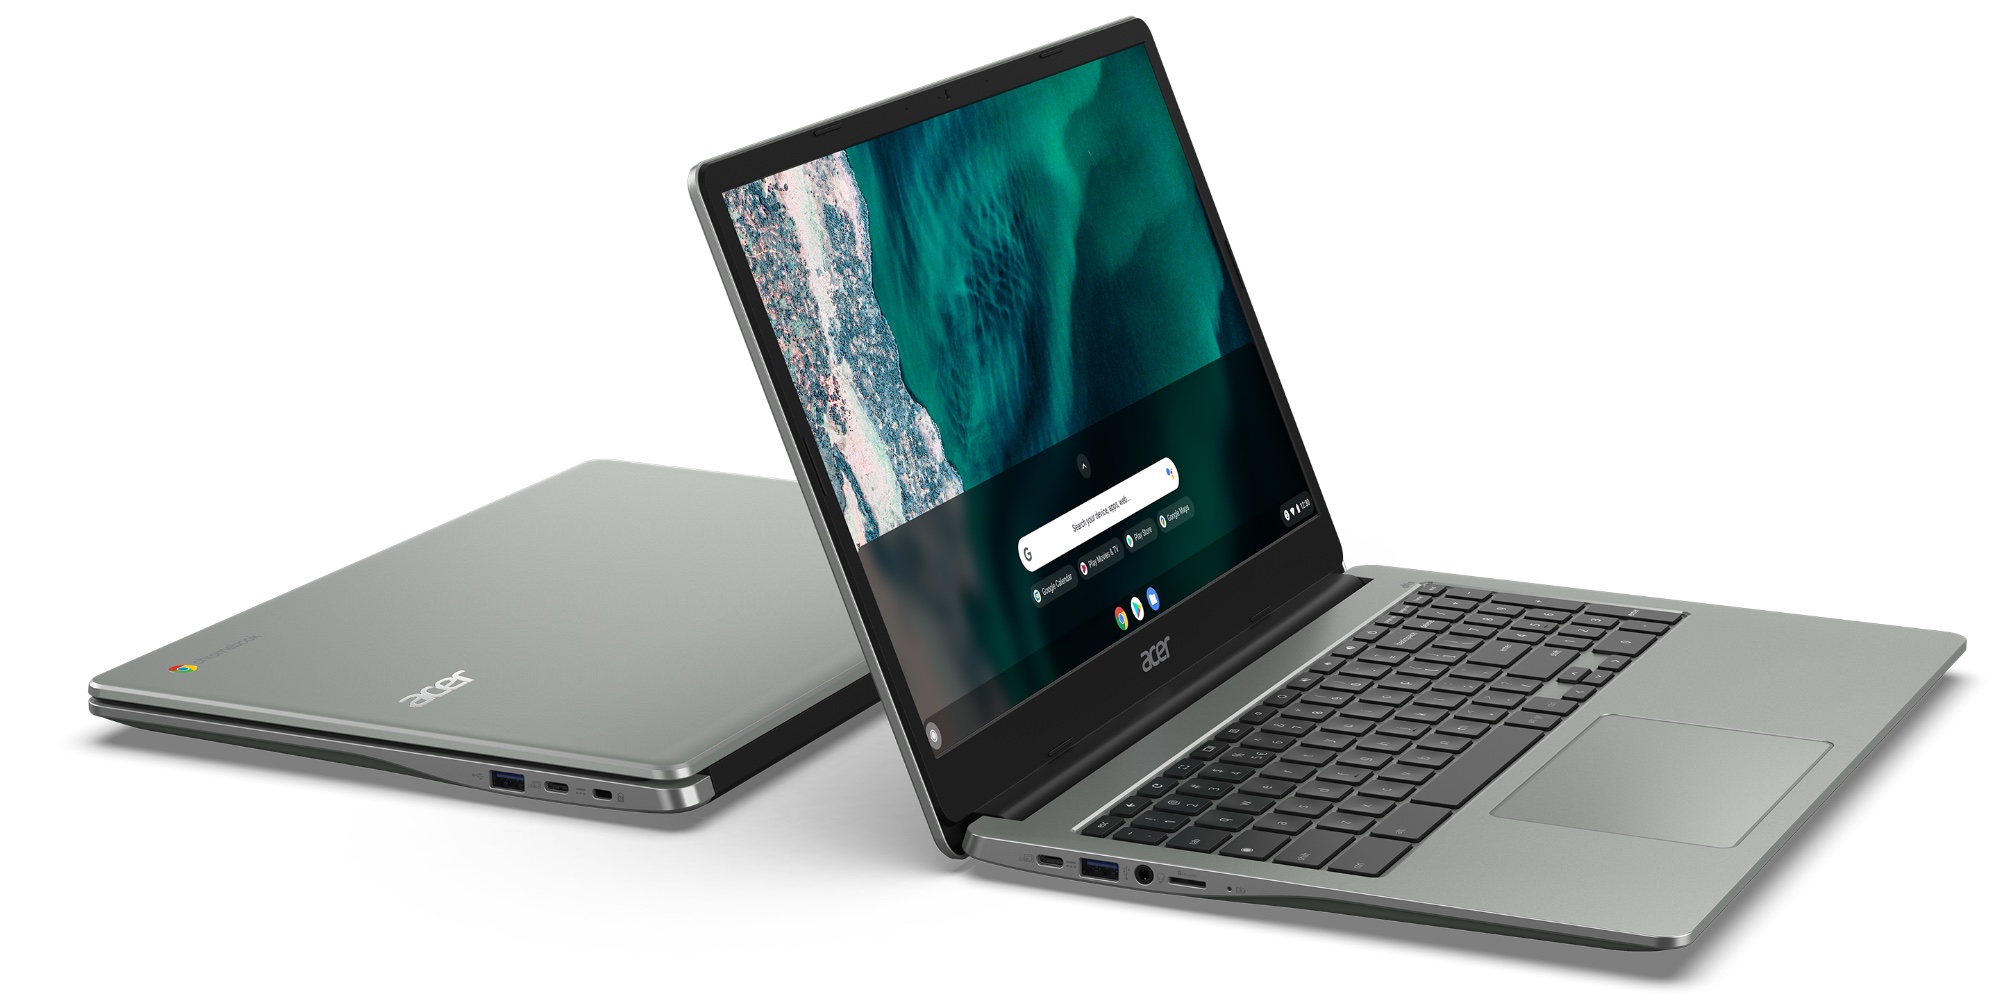 Oferty: Acer Chromebook Spin 513 osiąga najniższy w historii poziom 465 USD, smartfon TCL 10L z Androidem 150 USD, więcej